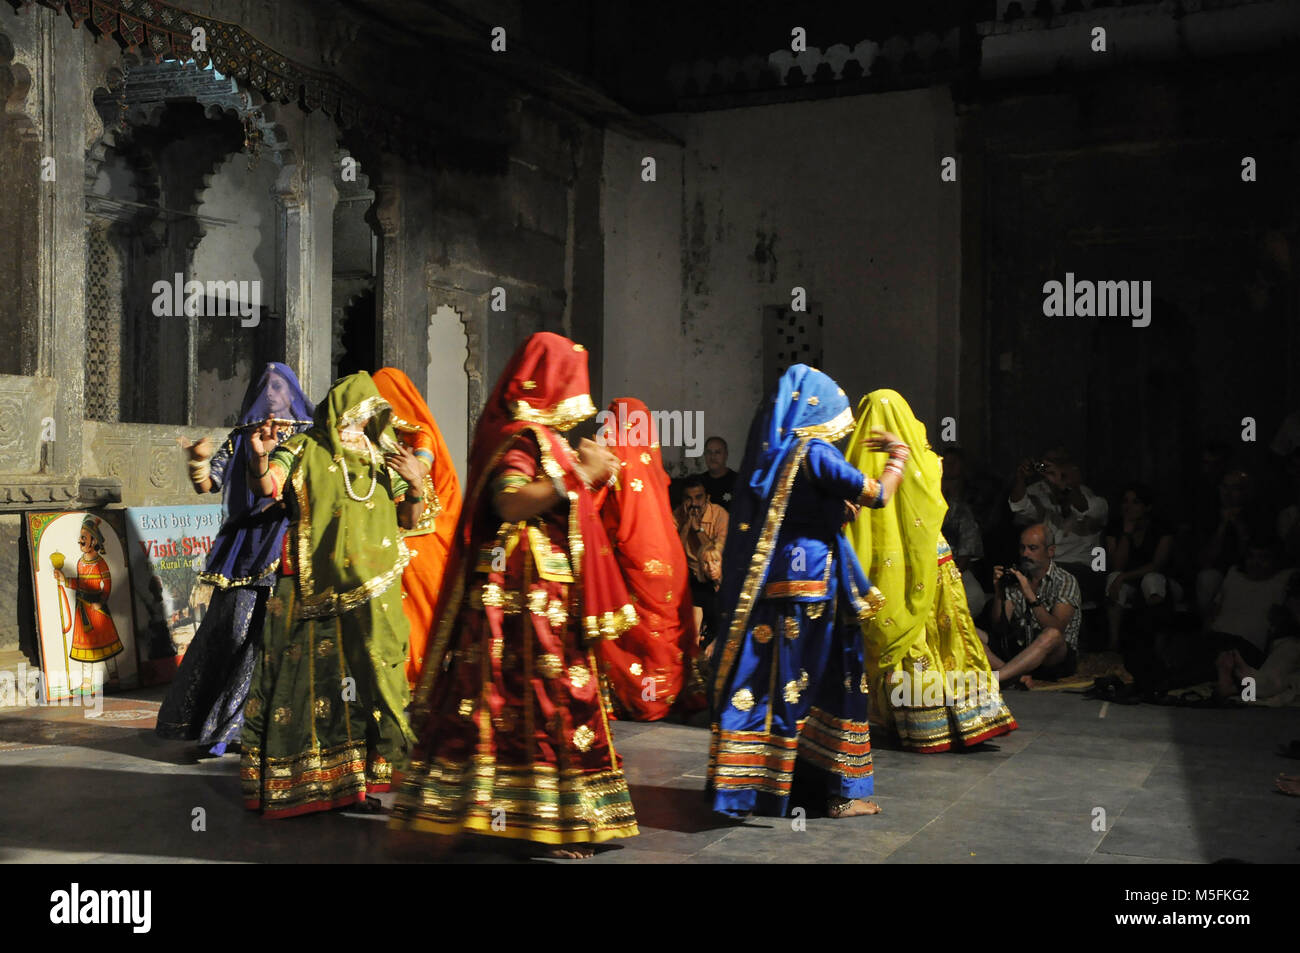 rajasthani women performing folk dance, mount abu, rajasthan, india, Asia Stock Photo